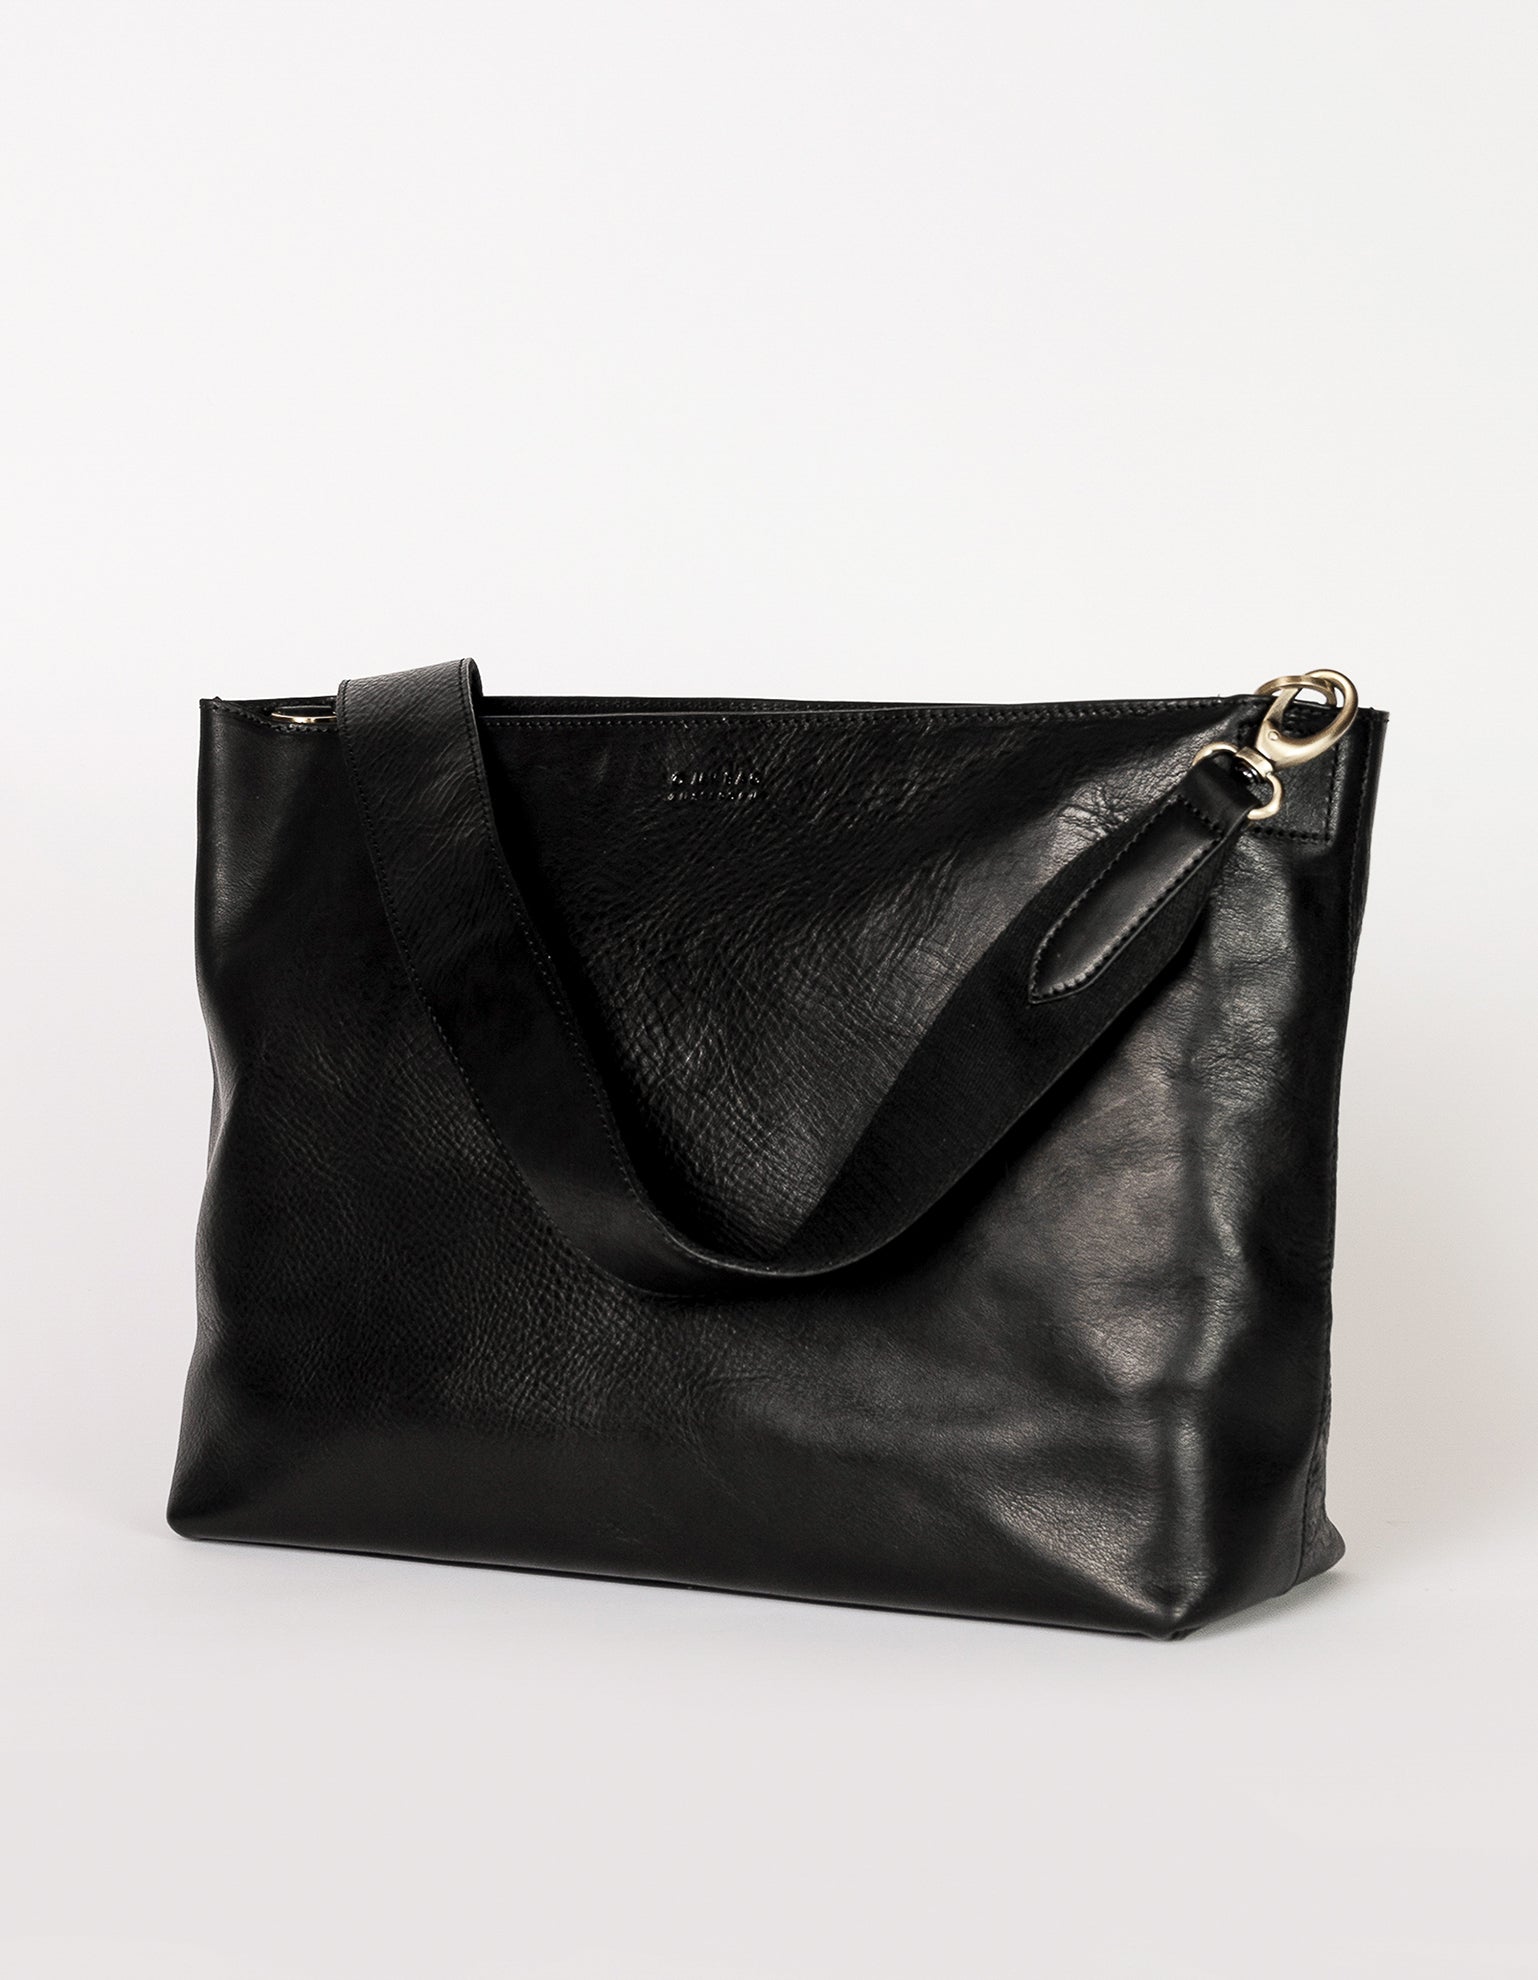 Olivia - Black Stromboli Leather bag - side product image